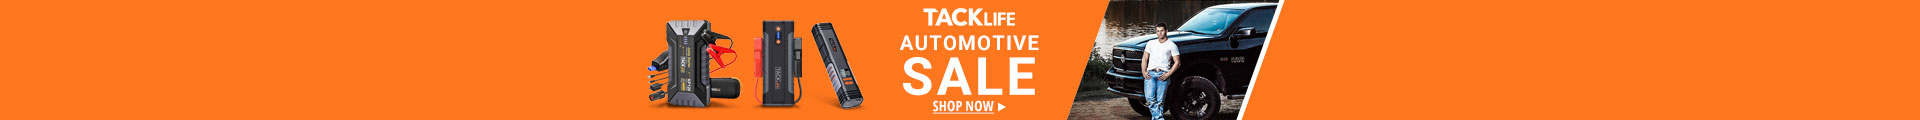 TackLife Automotive Sale